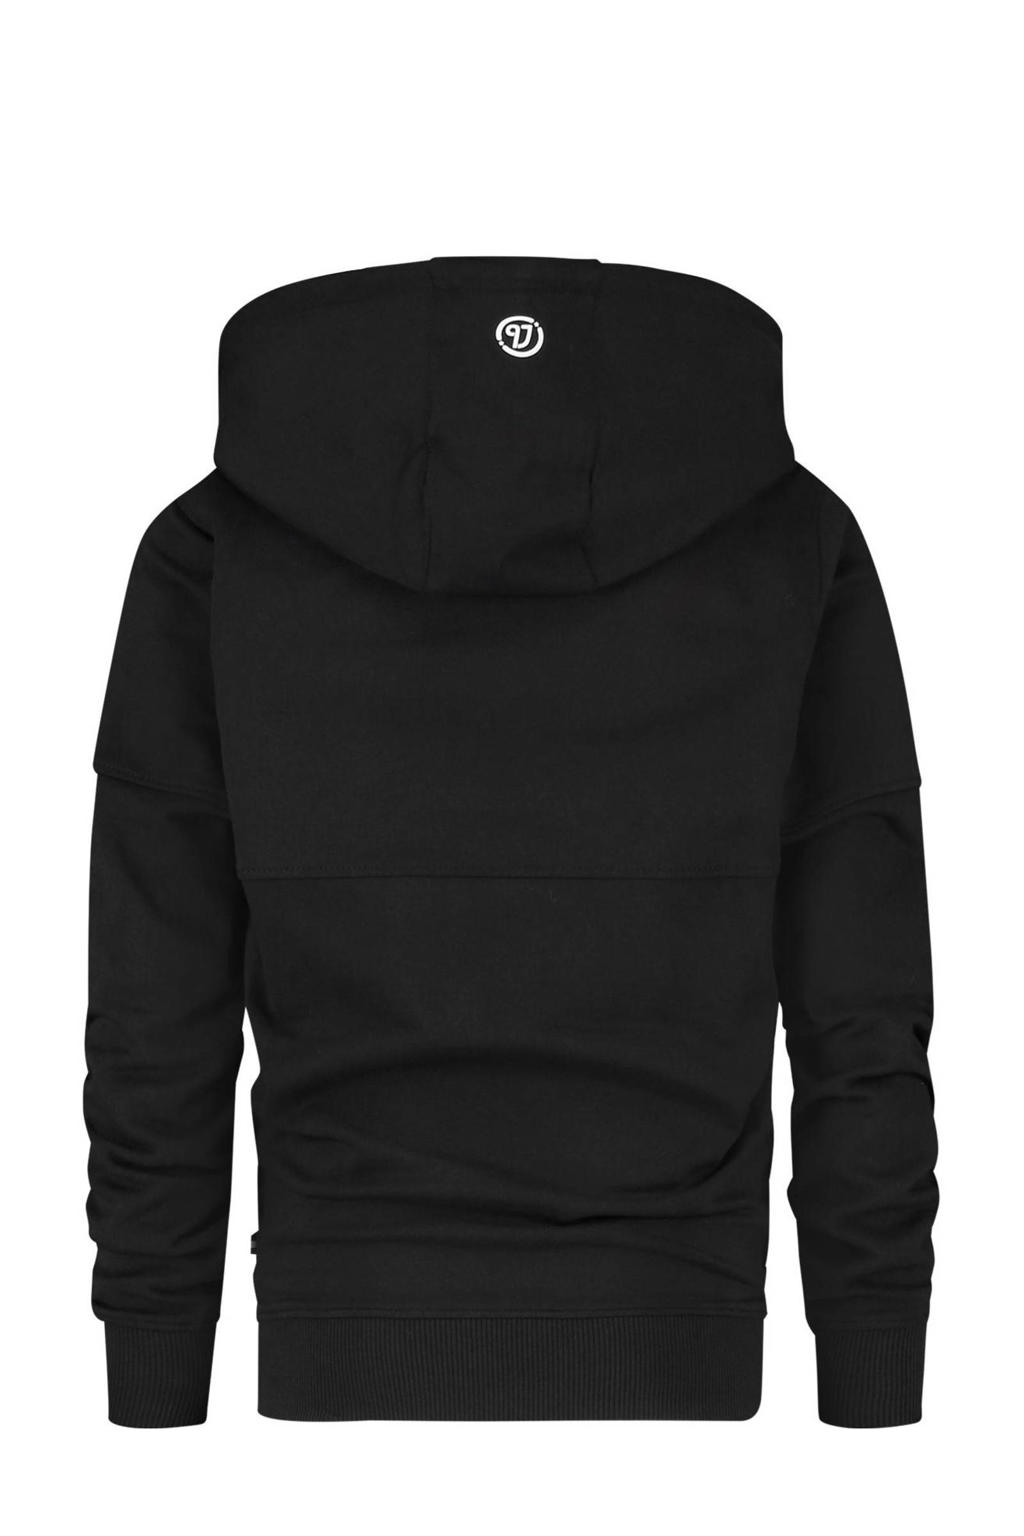 Zwarte jongens Vingino Essentials hoodie van sweat materiaal met lange mouwen en capuchon